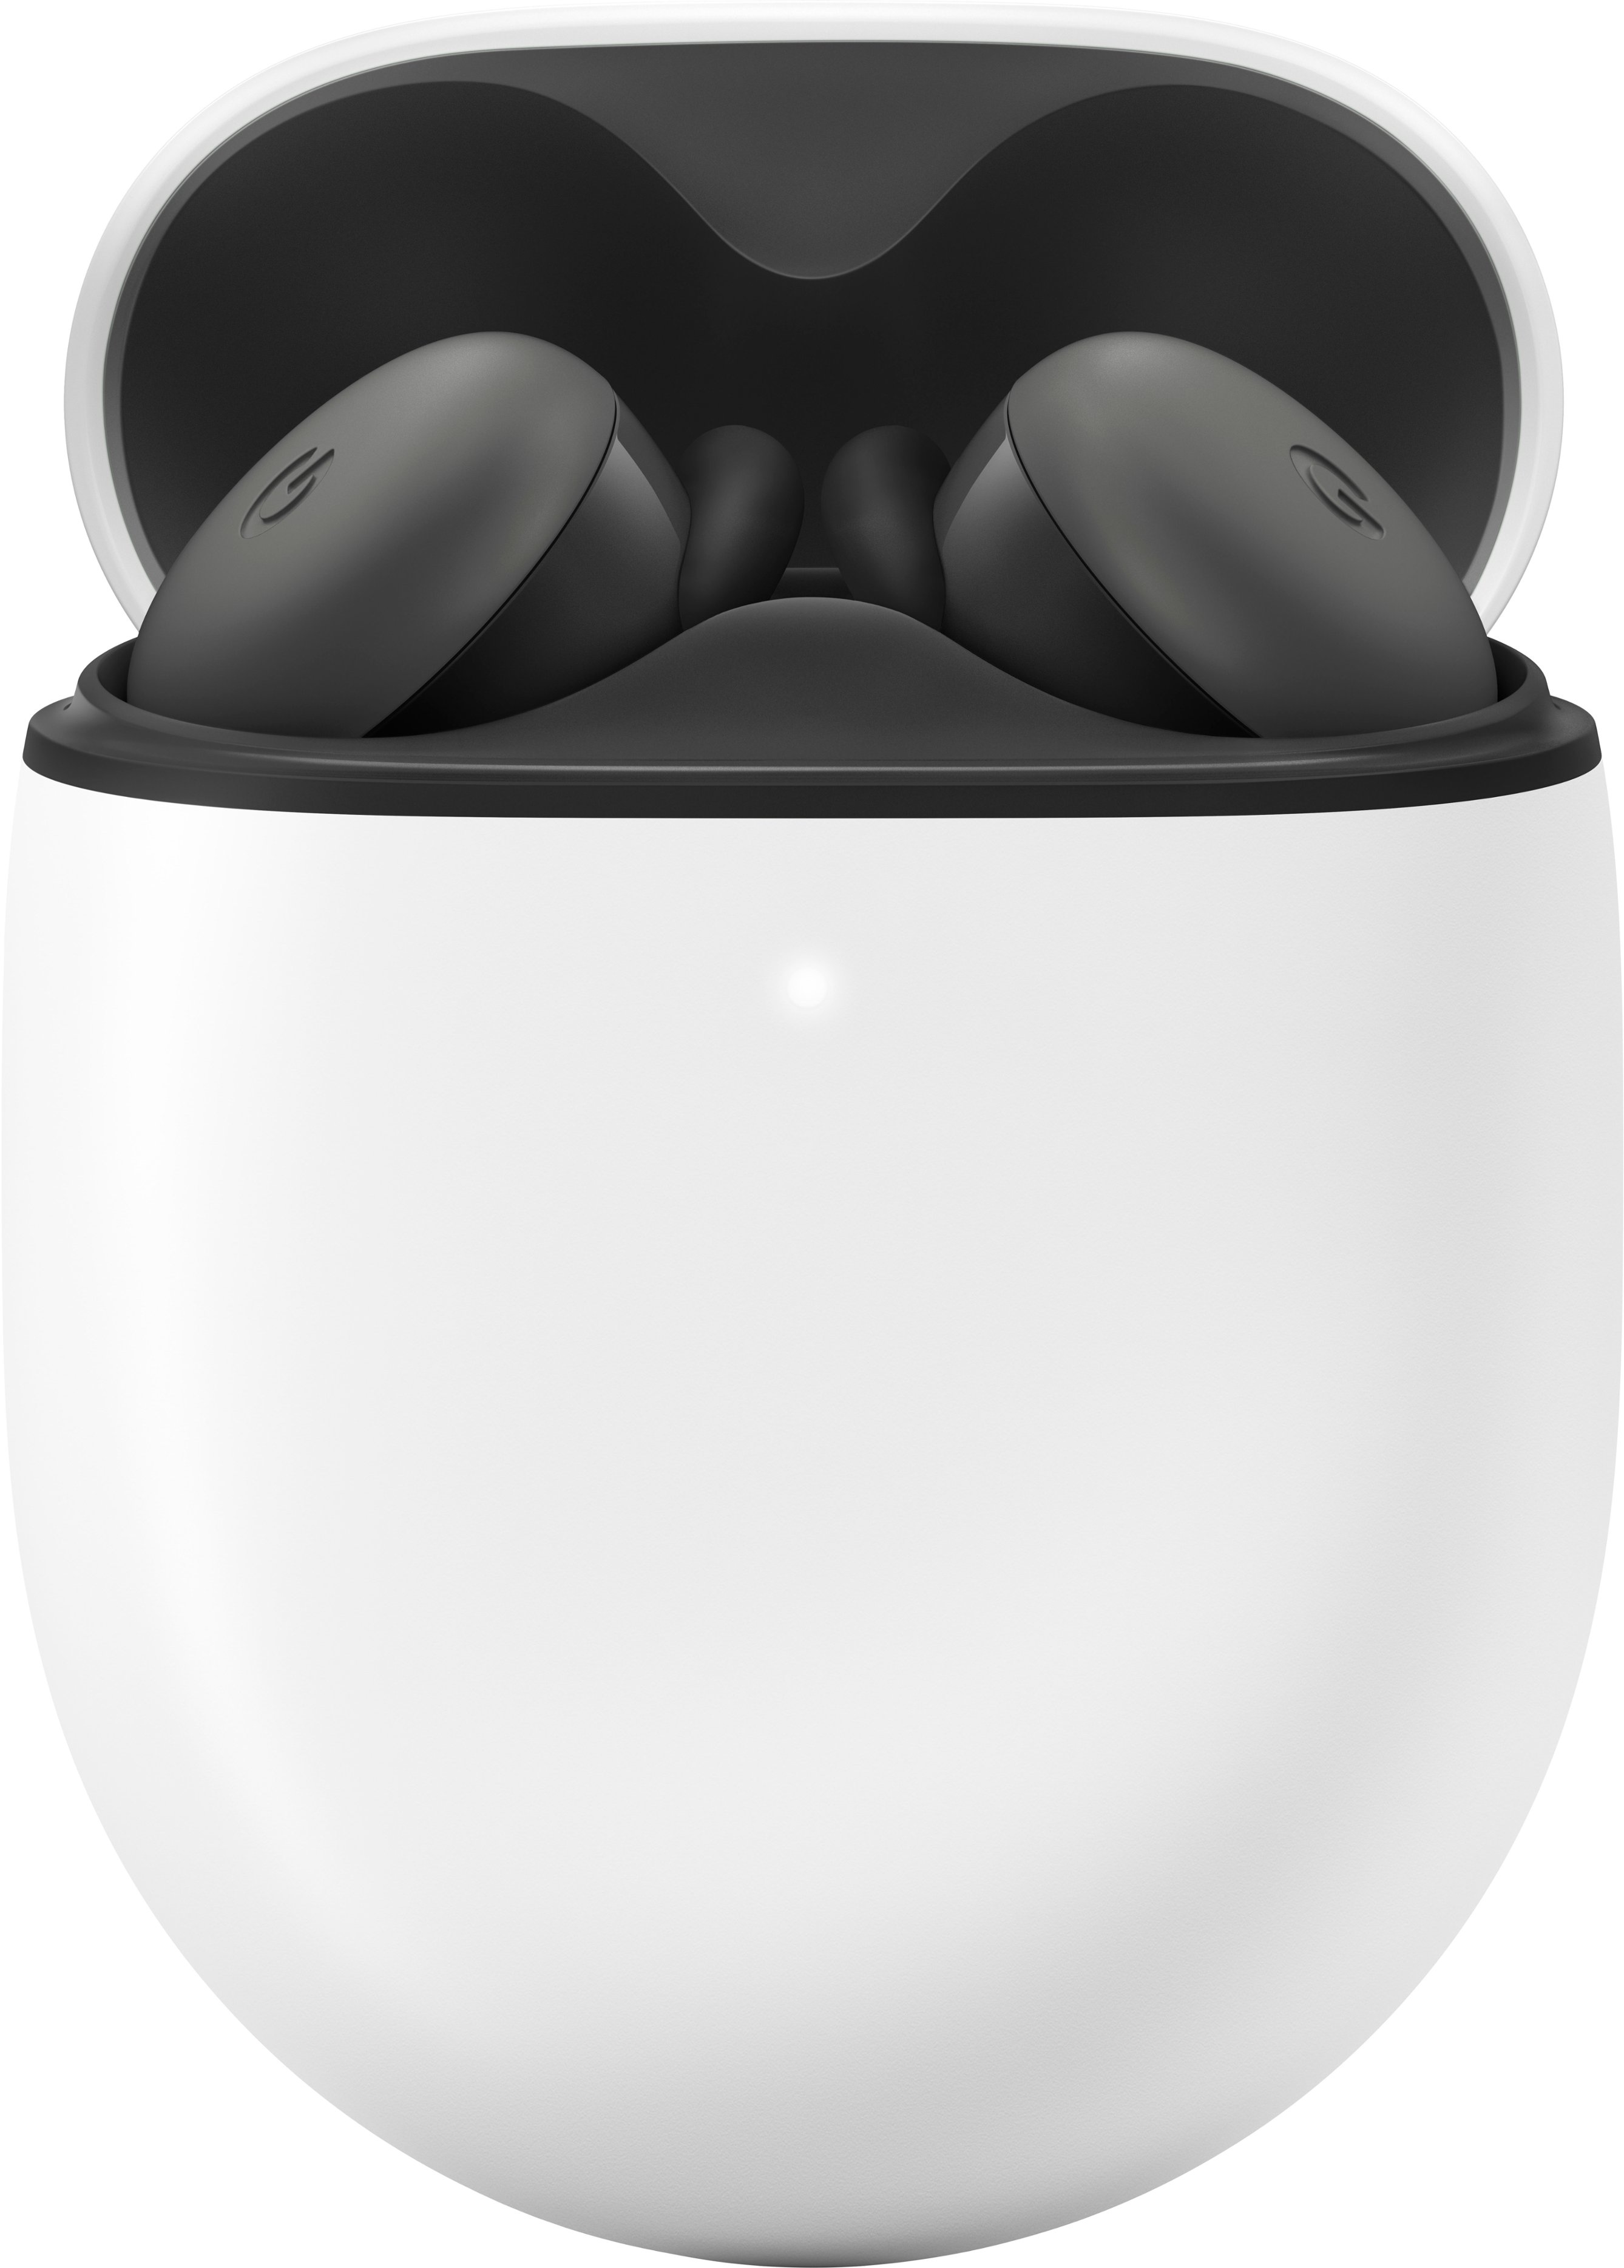 Google Pixel Buds A-Series True Wireless In-Ear Headphones Charcoal  GA04281-US - Best Buy